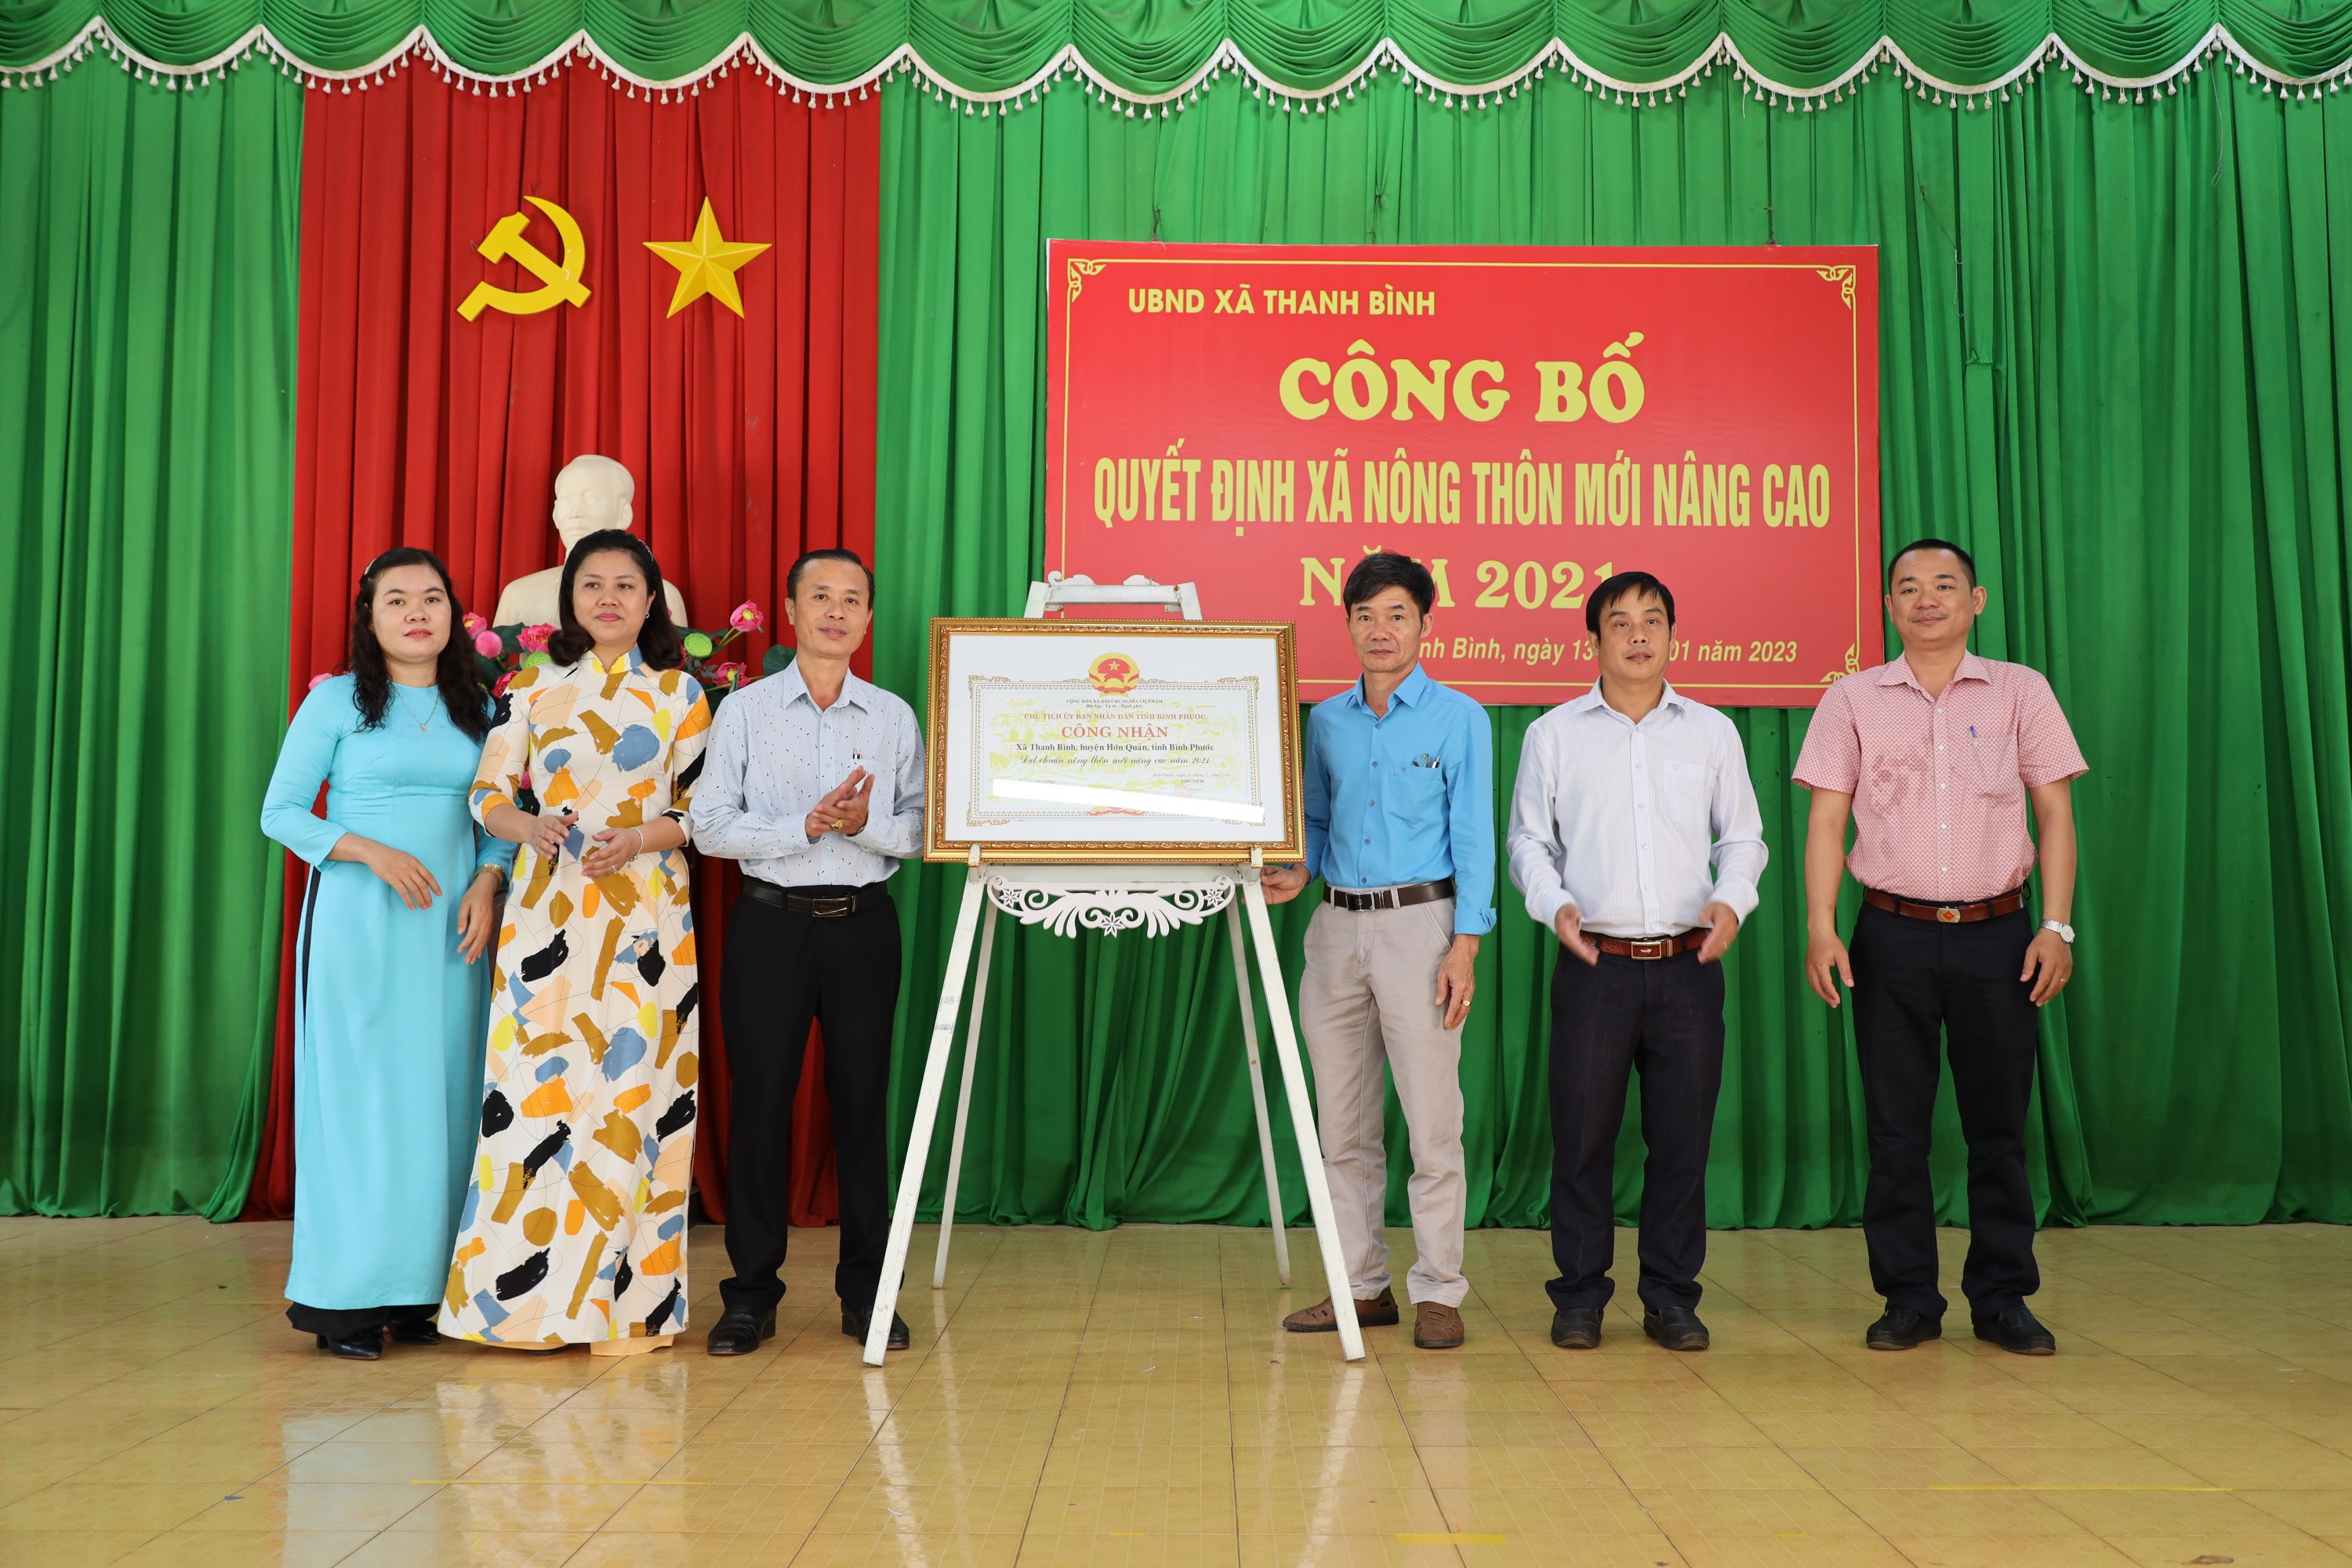 ông Trần Hiển, Phó Trưởng phòng Nông nghiệp huyện trao Quyết định công nhận xã đạt chuẩn NTM nâng cao cho xã Thanh Bình